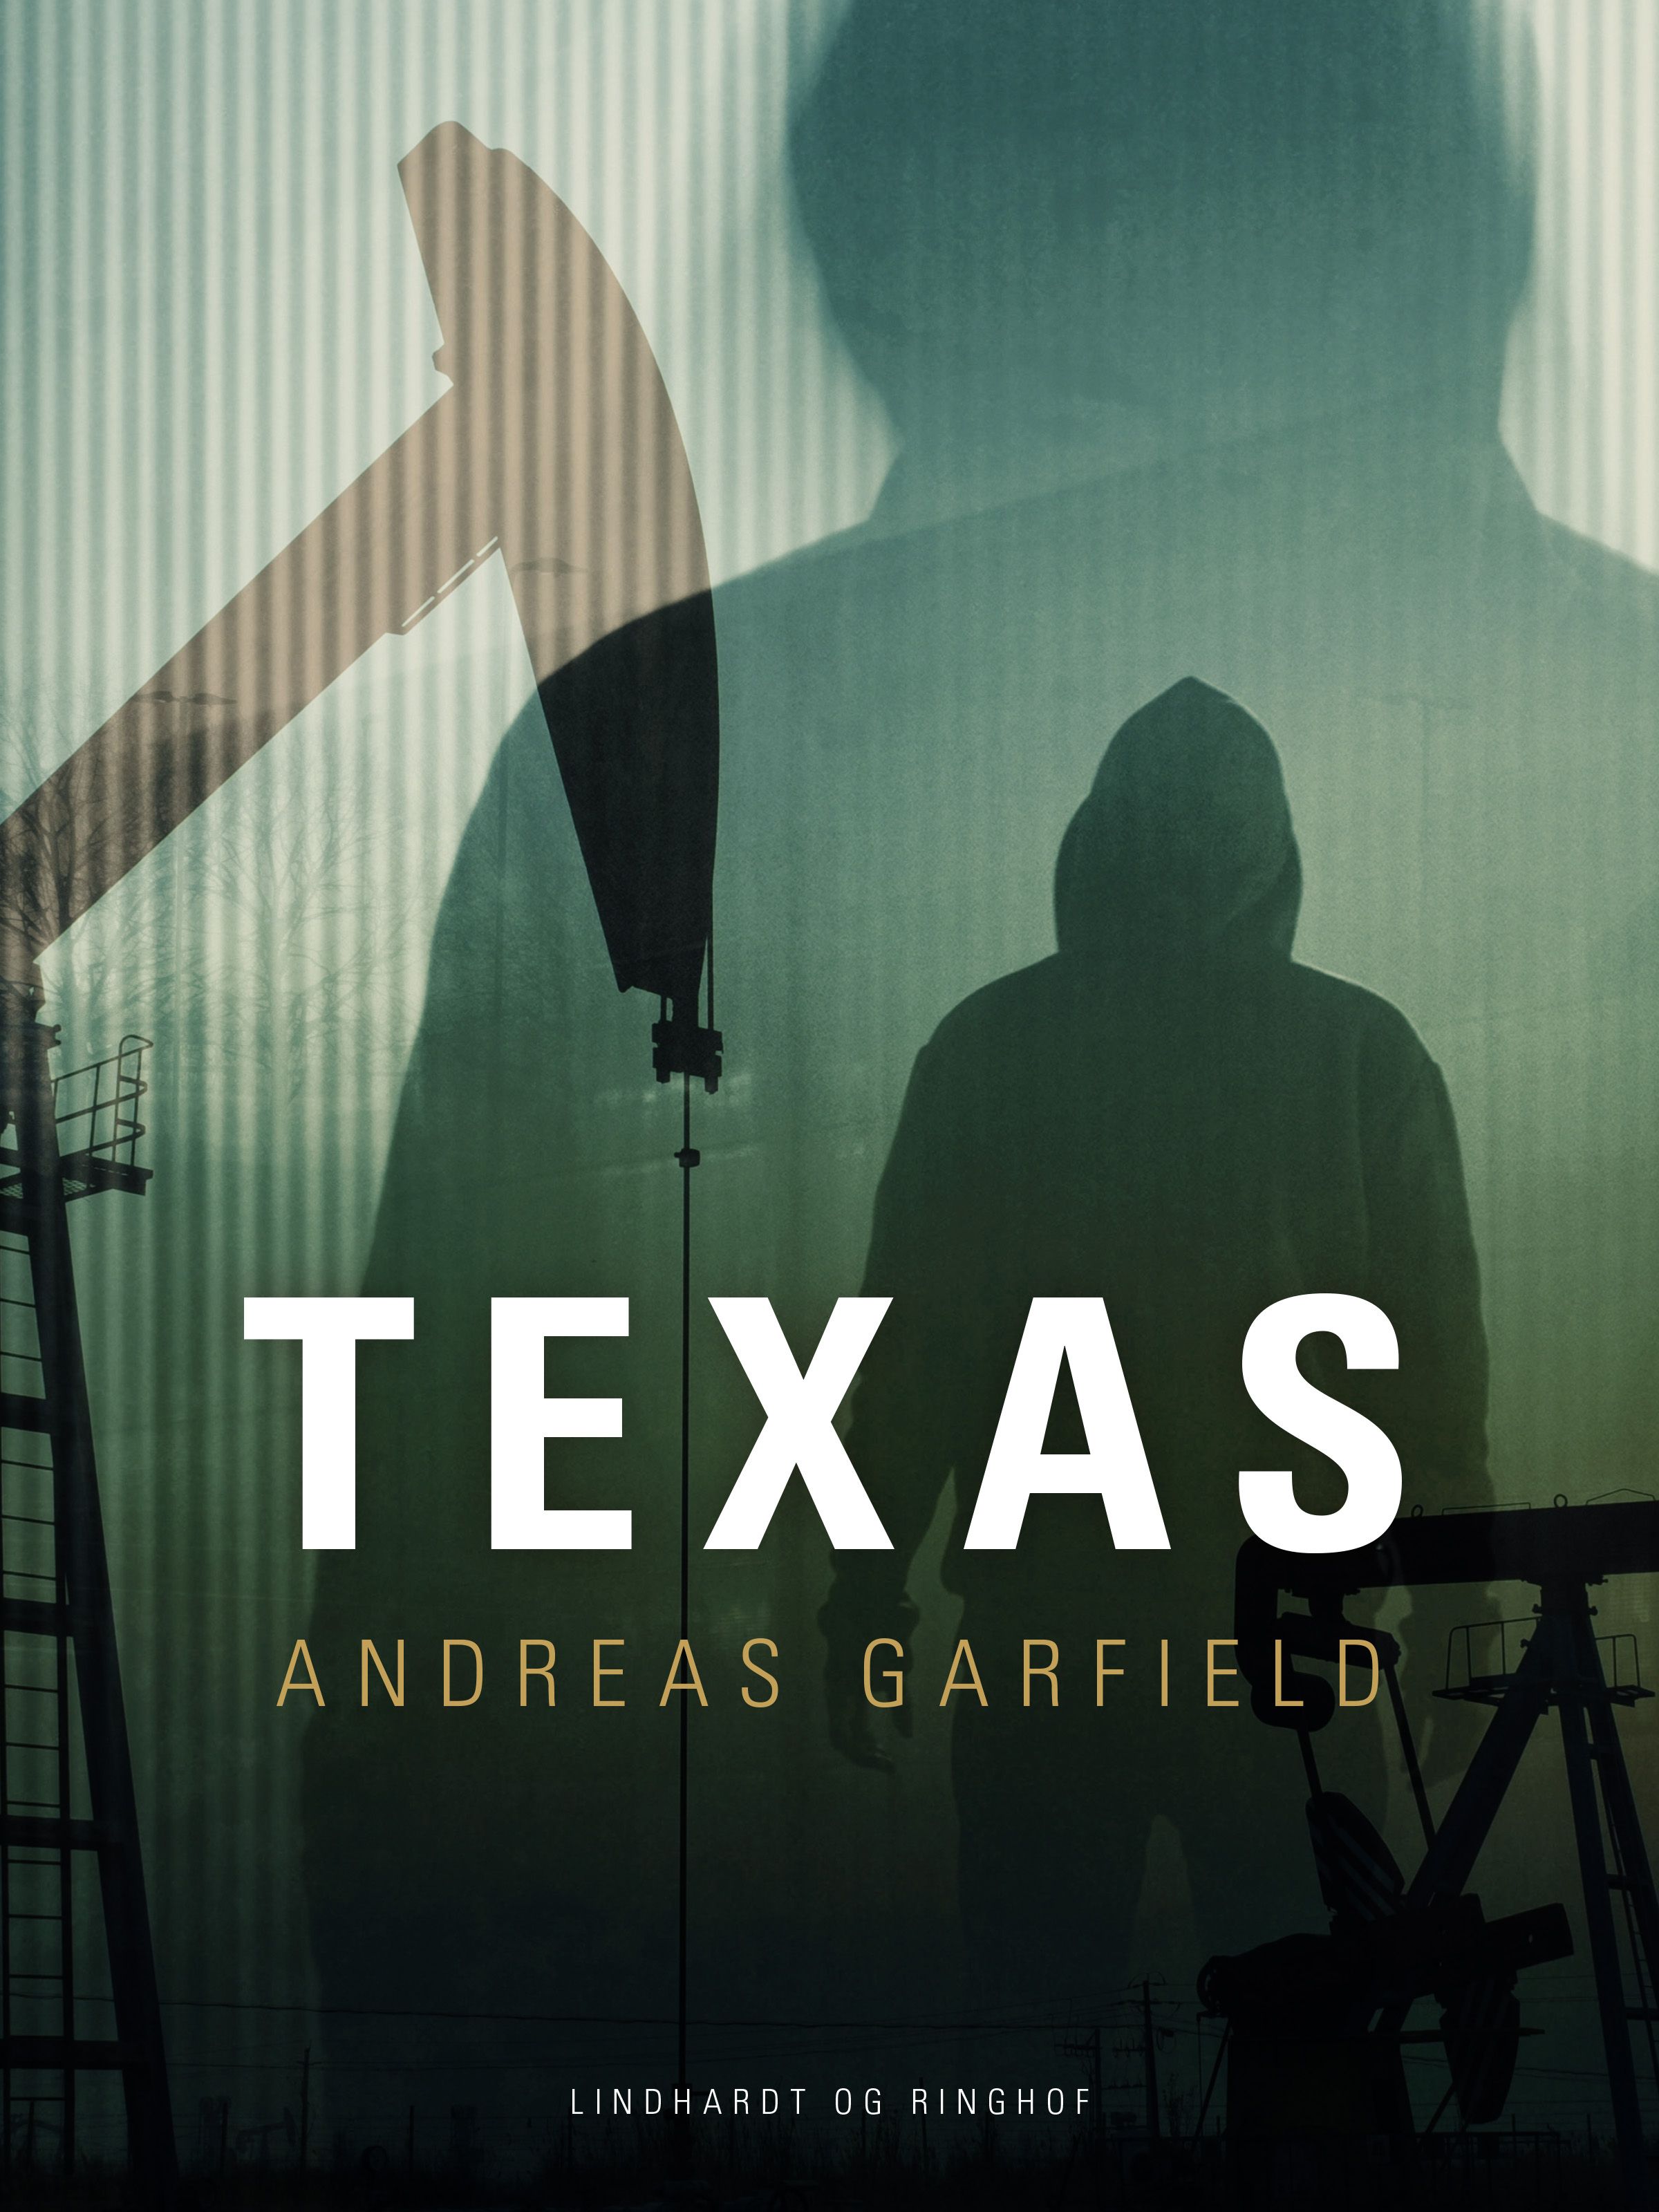 Texas, eBook by Andreas Garfield